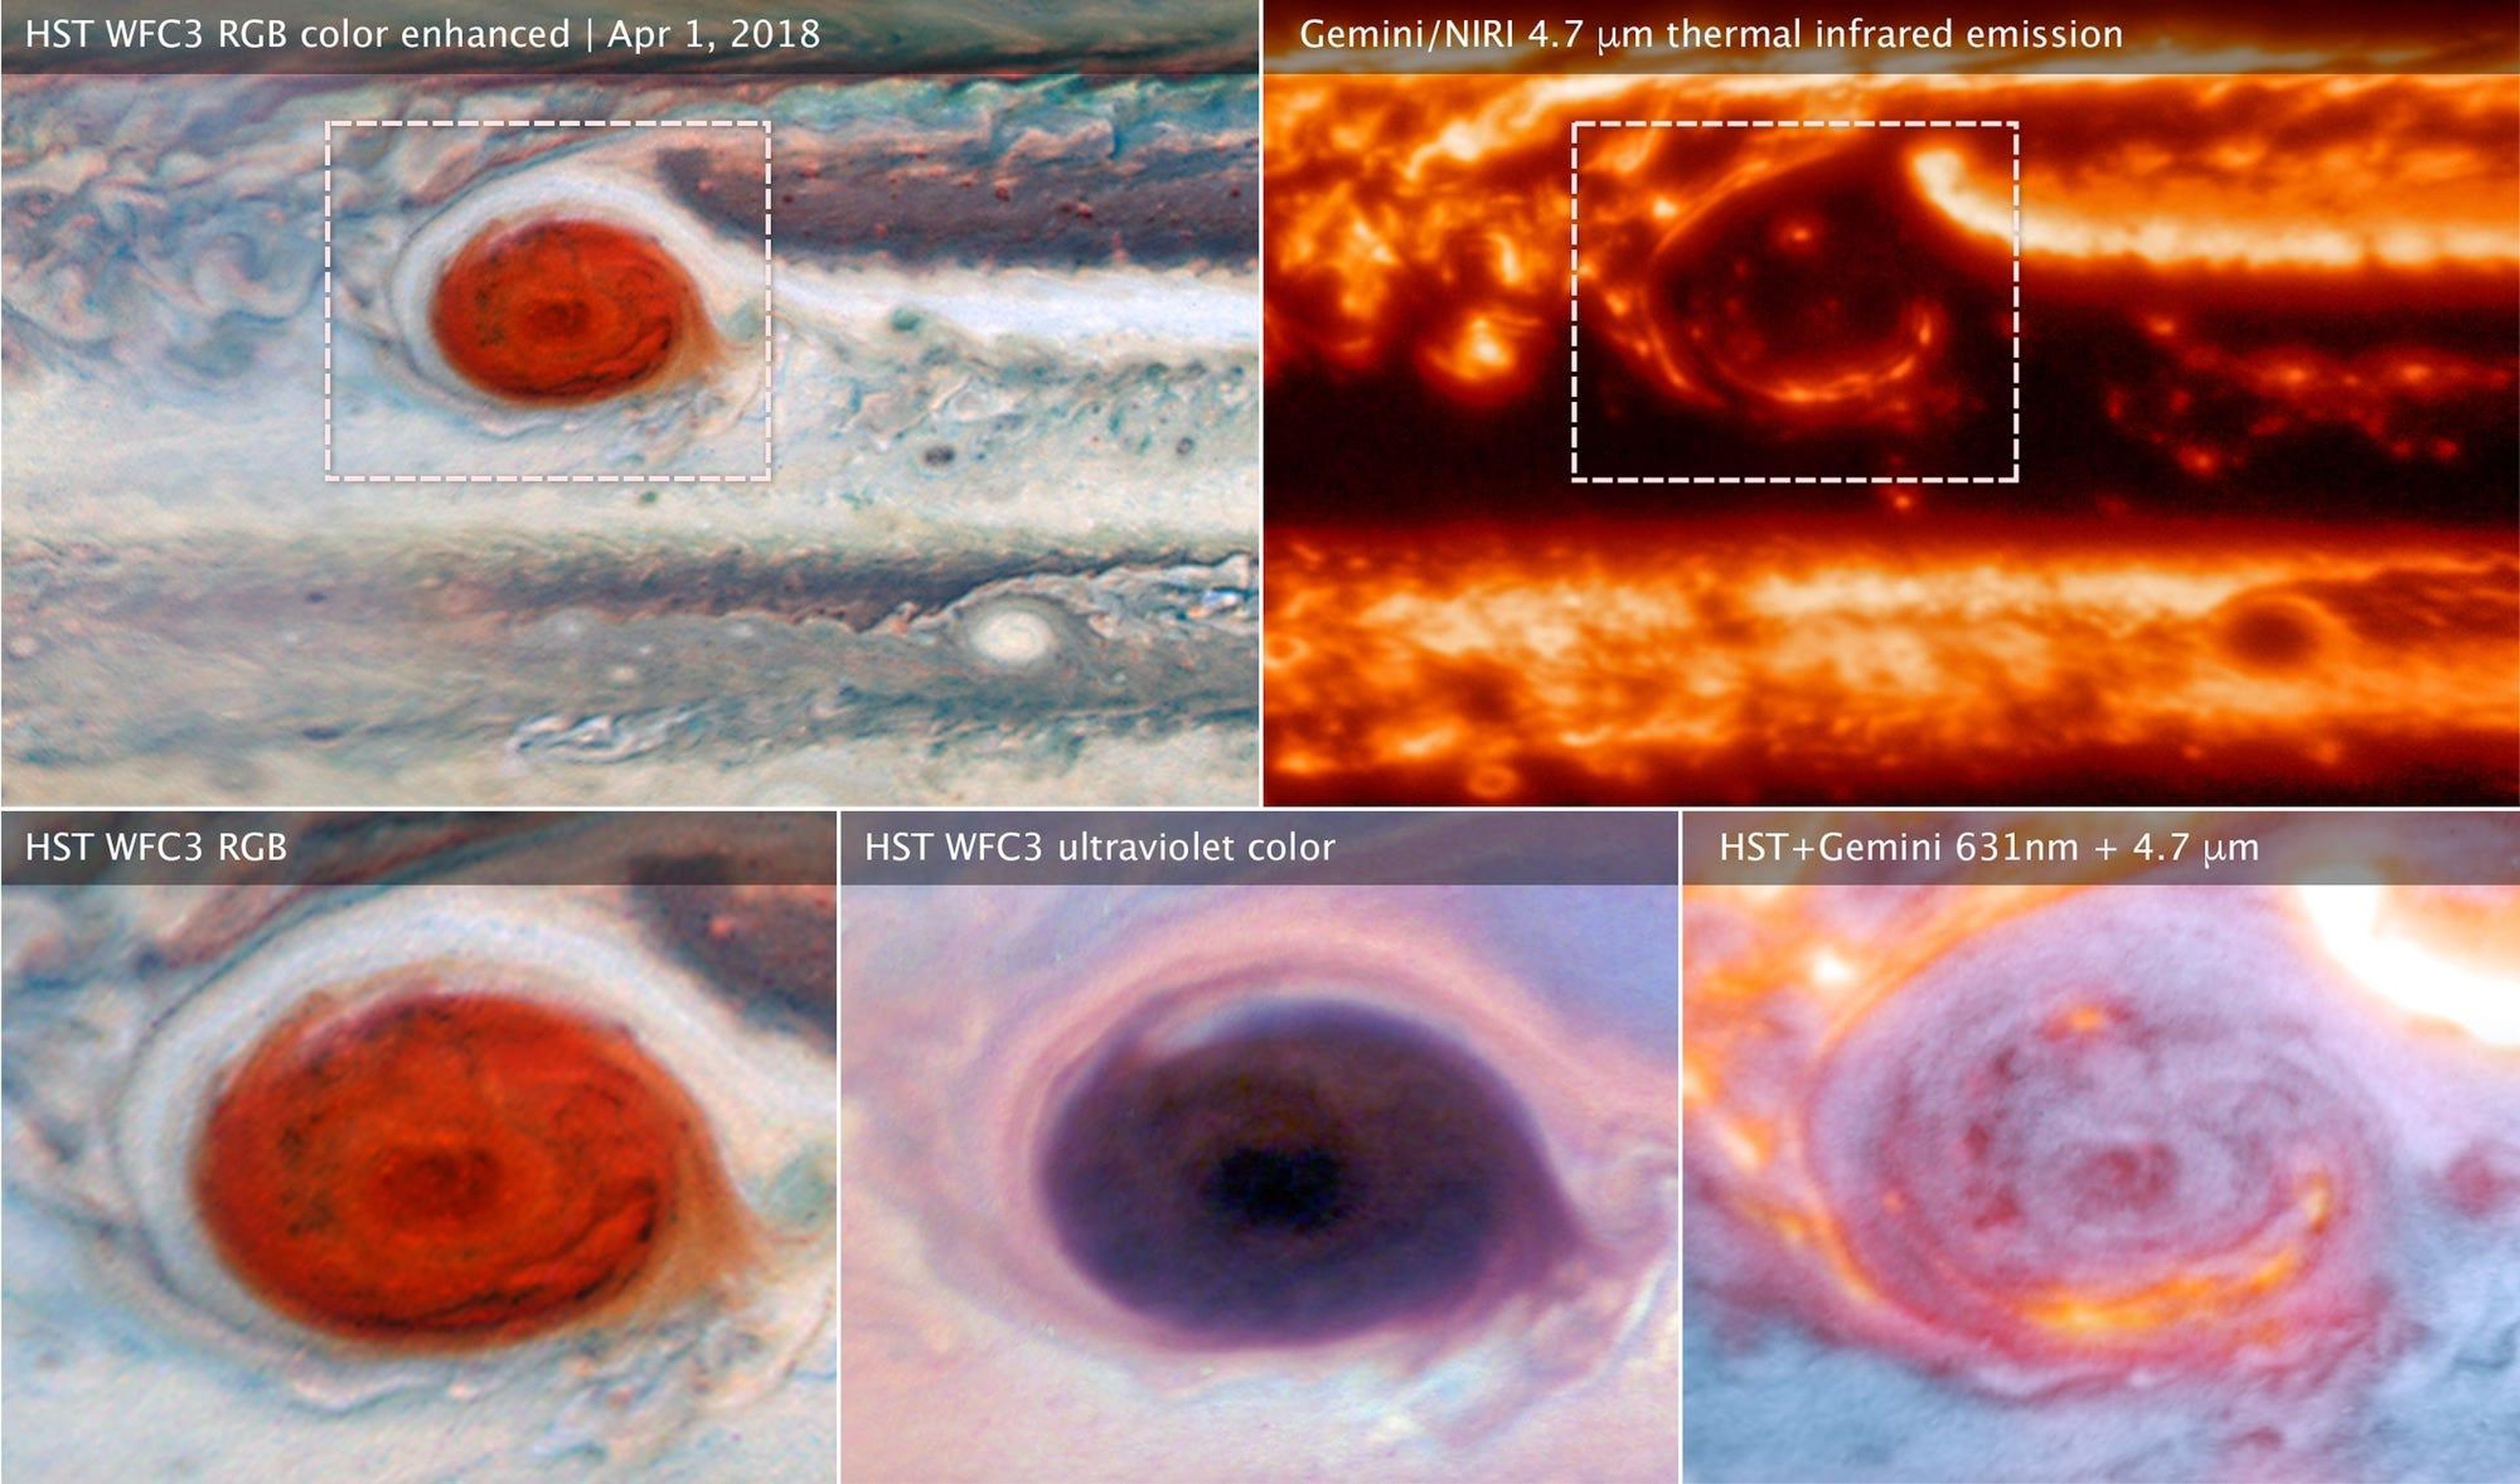 Imágenes de la Gran Mancha Roja de Júpiter recogidas por el telescopio Hubble y el Observatorio Gemini, 1 de abril de 2018.